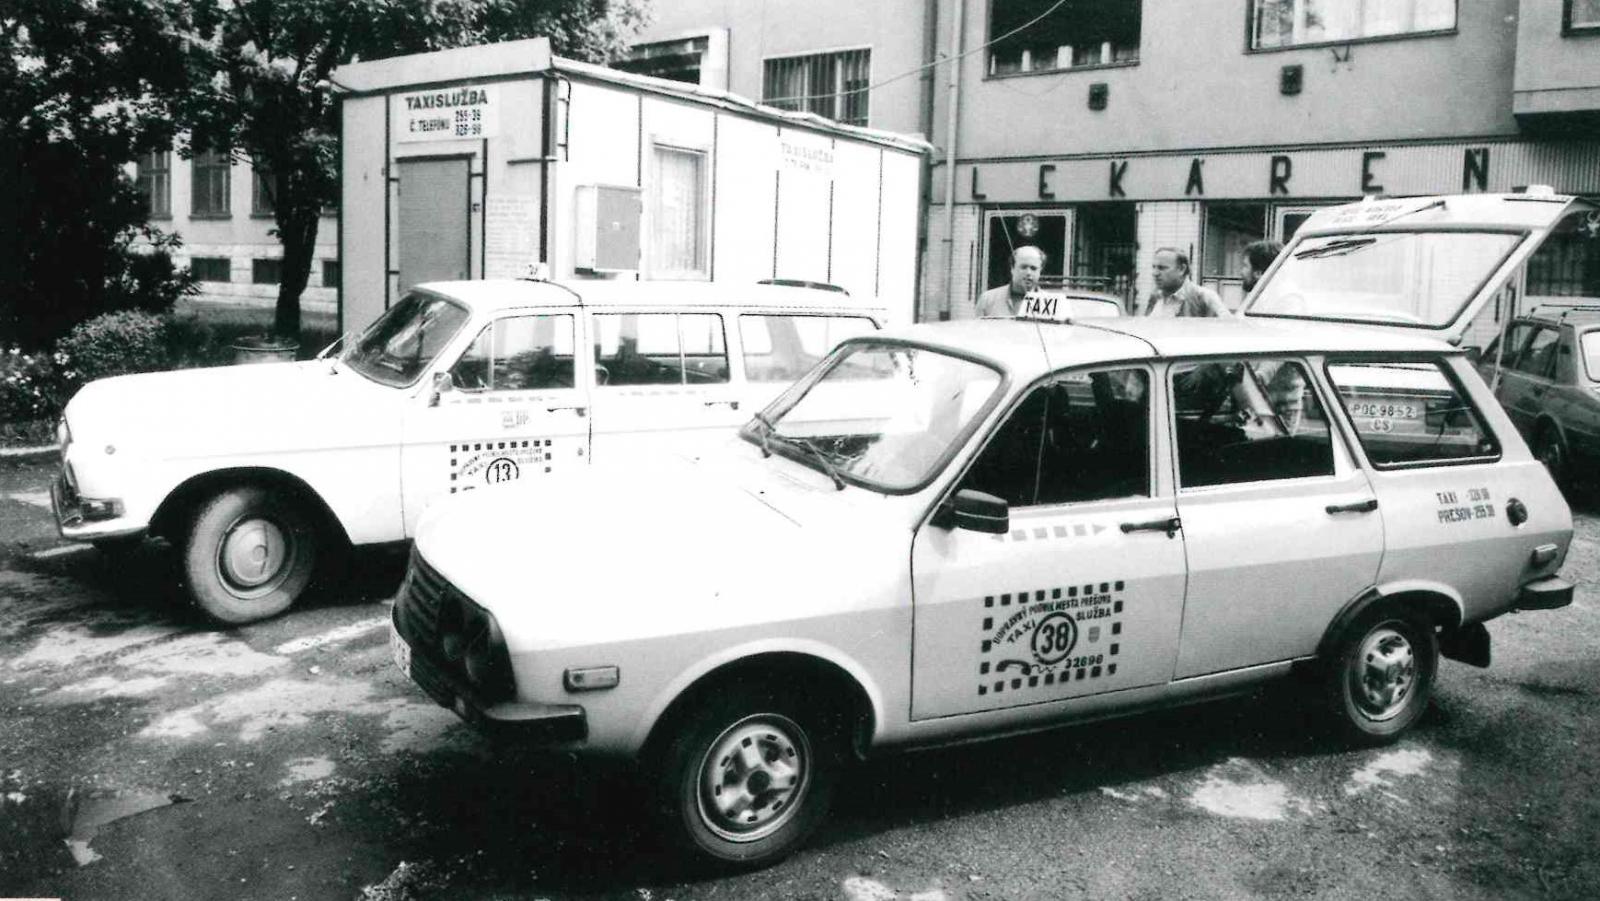 Pred 30 rokmi dopravný podnik prevádzkoval aj taxislužbu